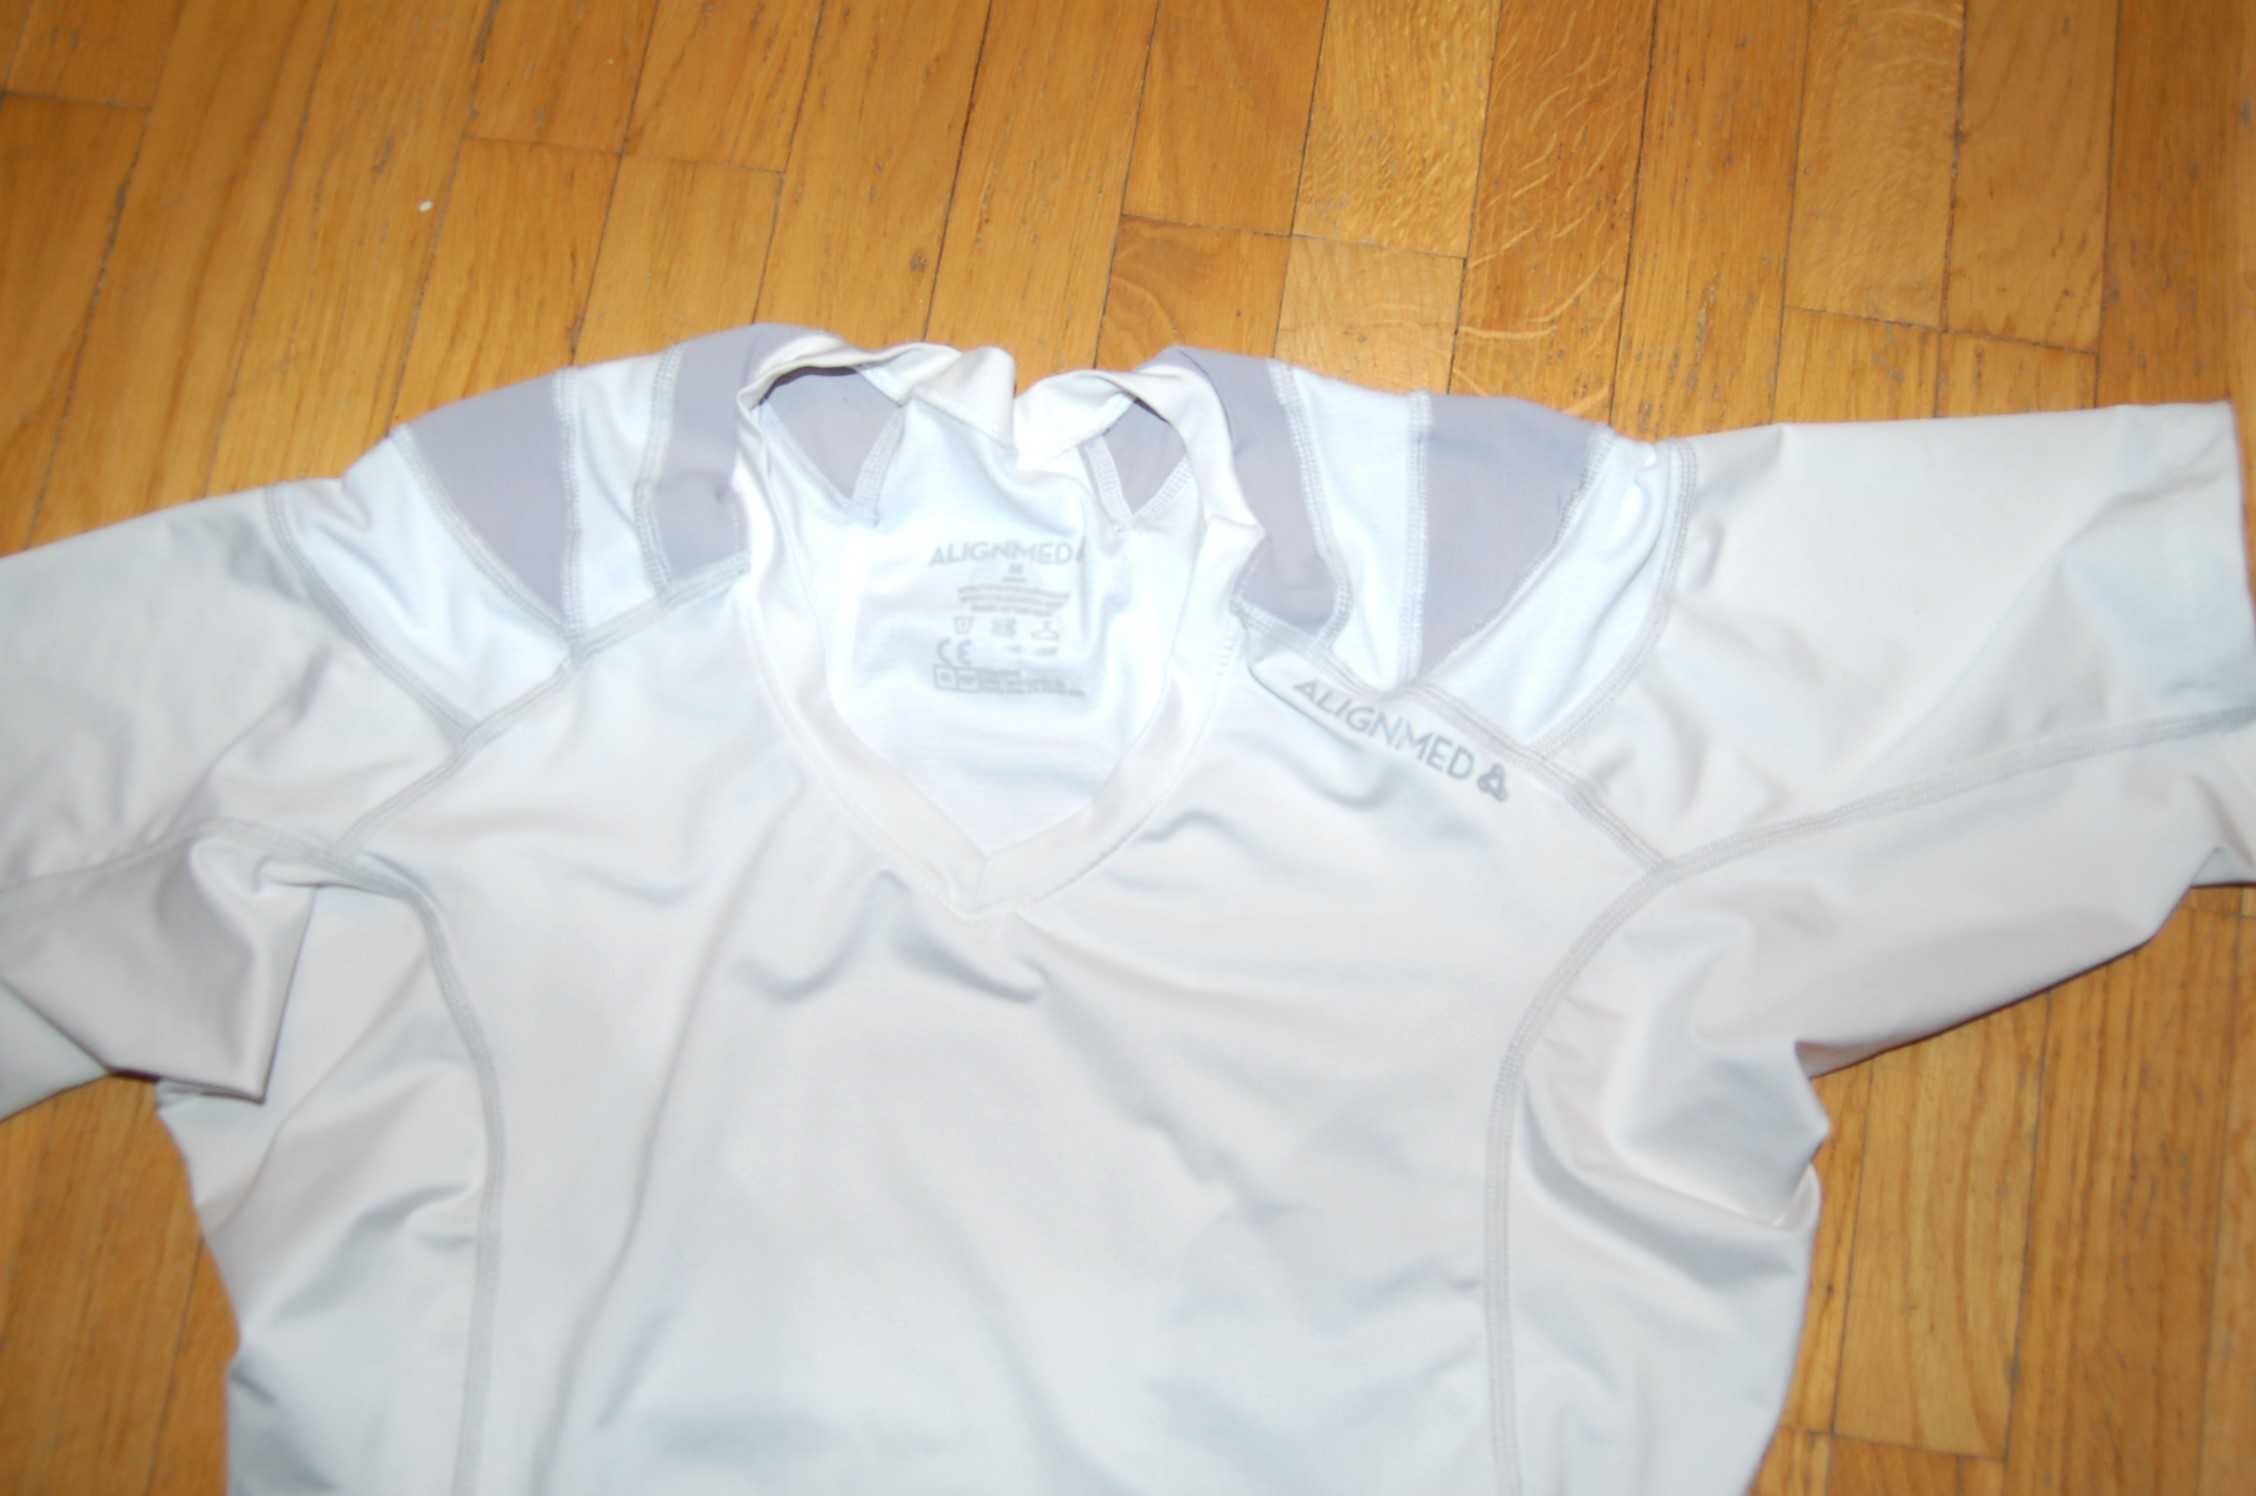 bluzka sportowa podkoszulek Alignmed rozmiar M USA